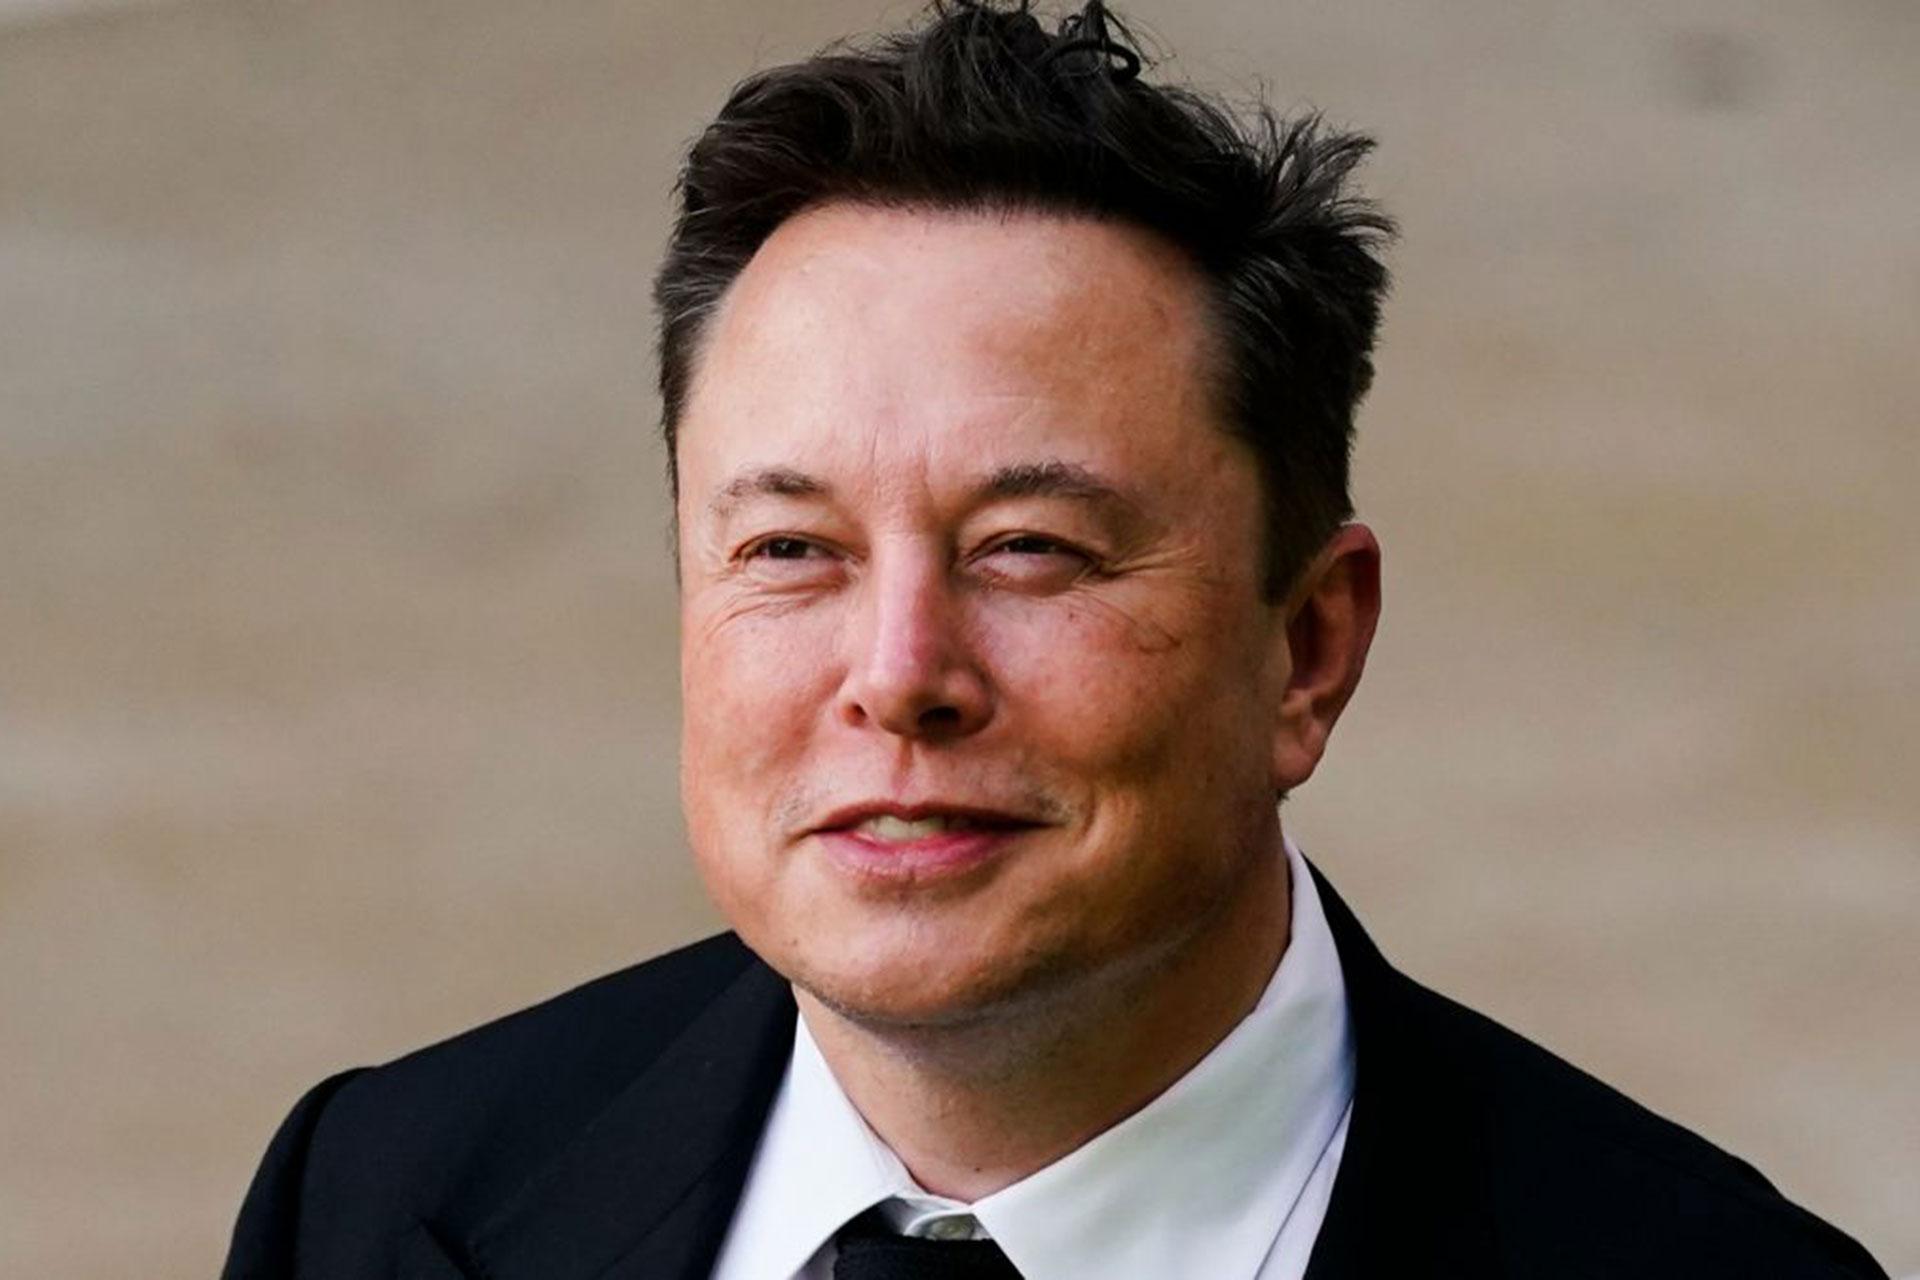 لبخند ایلان ماسک / Elon musk